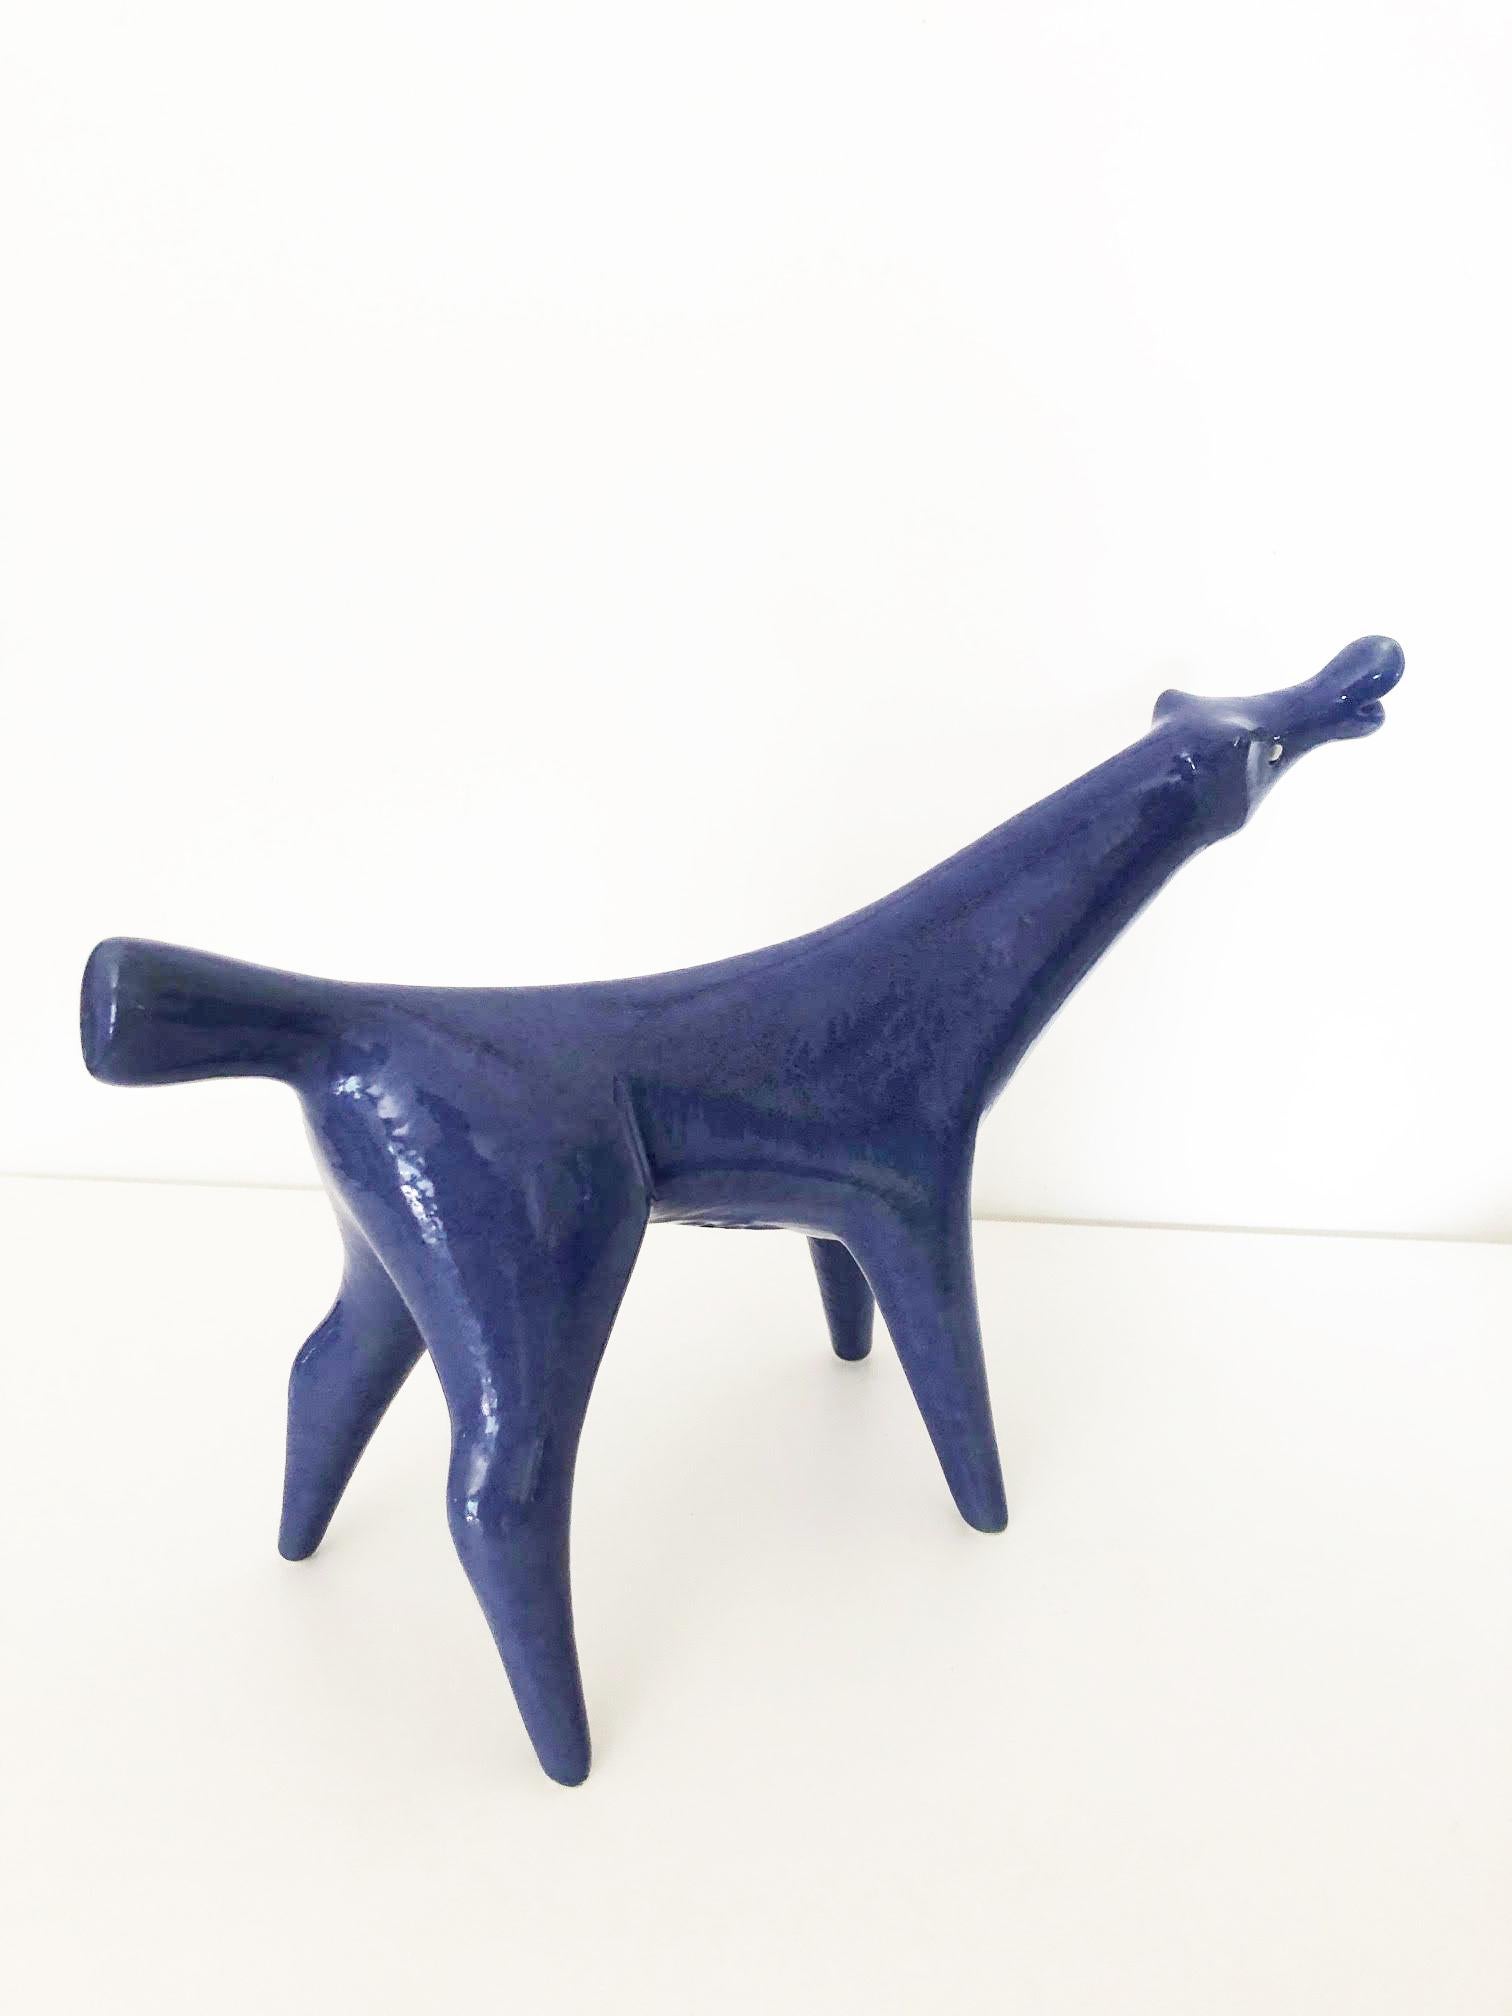 European Blue Dog of Roberto Rigon 1950s Made in Italy, Art